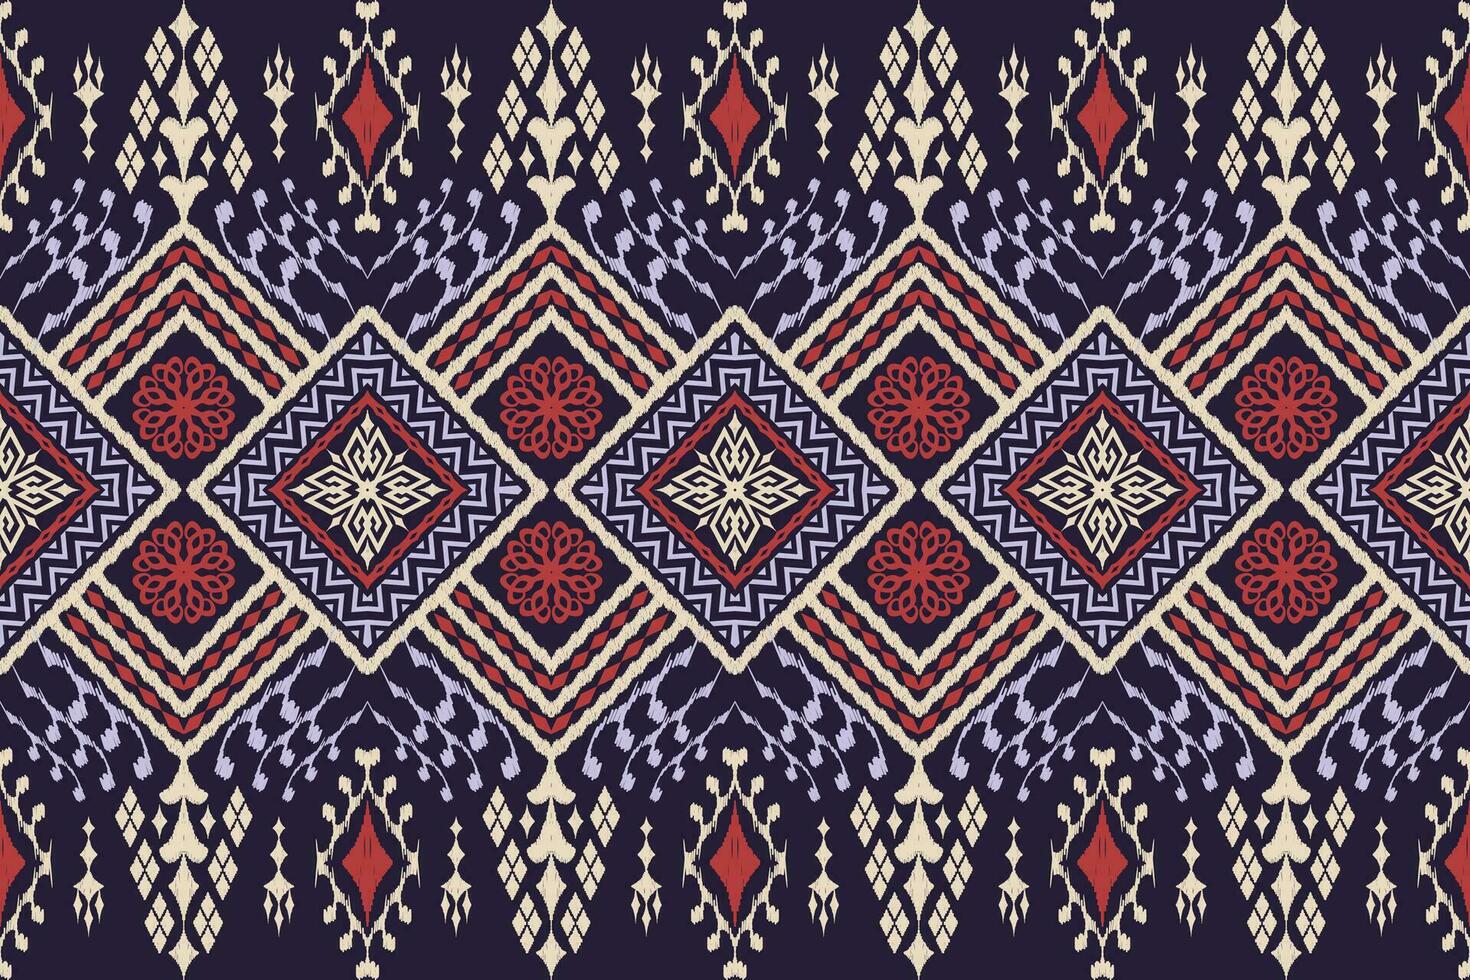 meetkundig etnisch aztec borduurwerk stijl.figuur ikat oosters traditioneel kunst Patroonontwerp voor etnisch achtergrond,behang,mode,kleding,verpakking,stof,afbeelding,vector illustratie. vector